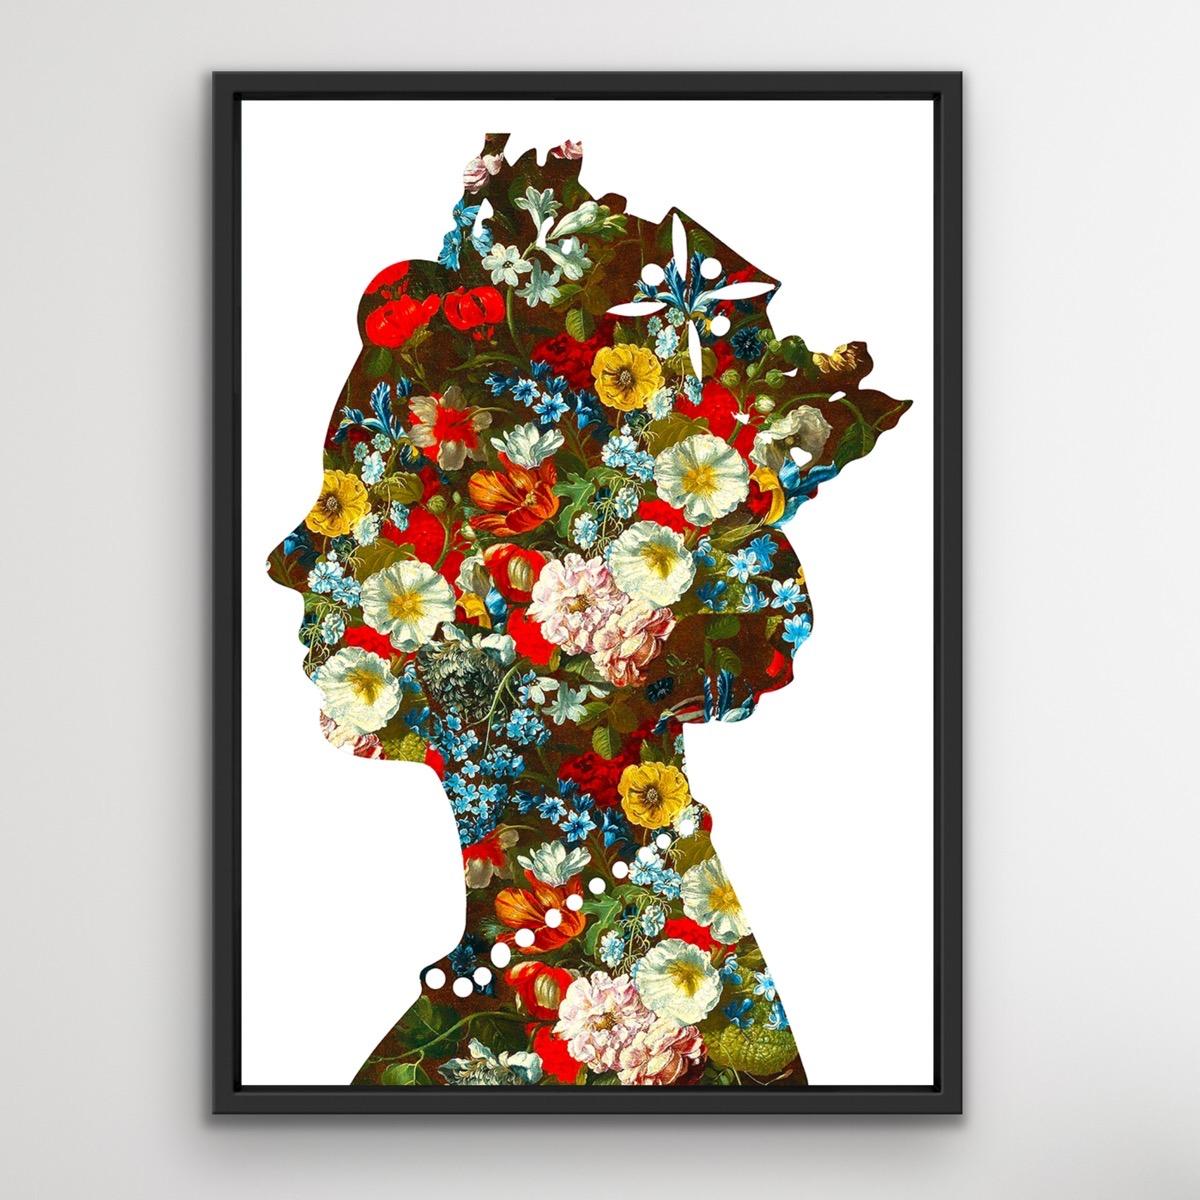 Eine Königin (02), Original Queen Art, Celebrity Art, Digitales Gemälde mit Blumenmuster (Pop-Art), Painting, von Agent X